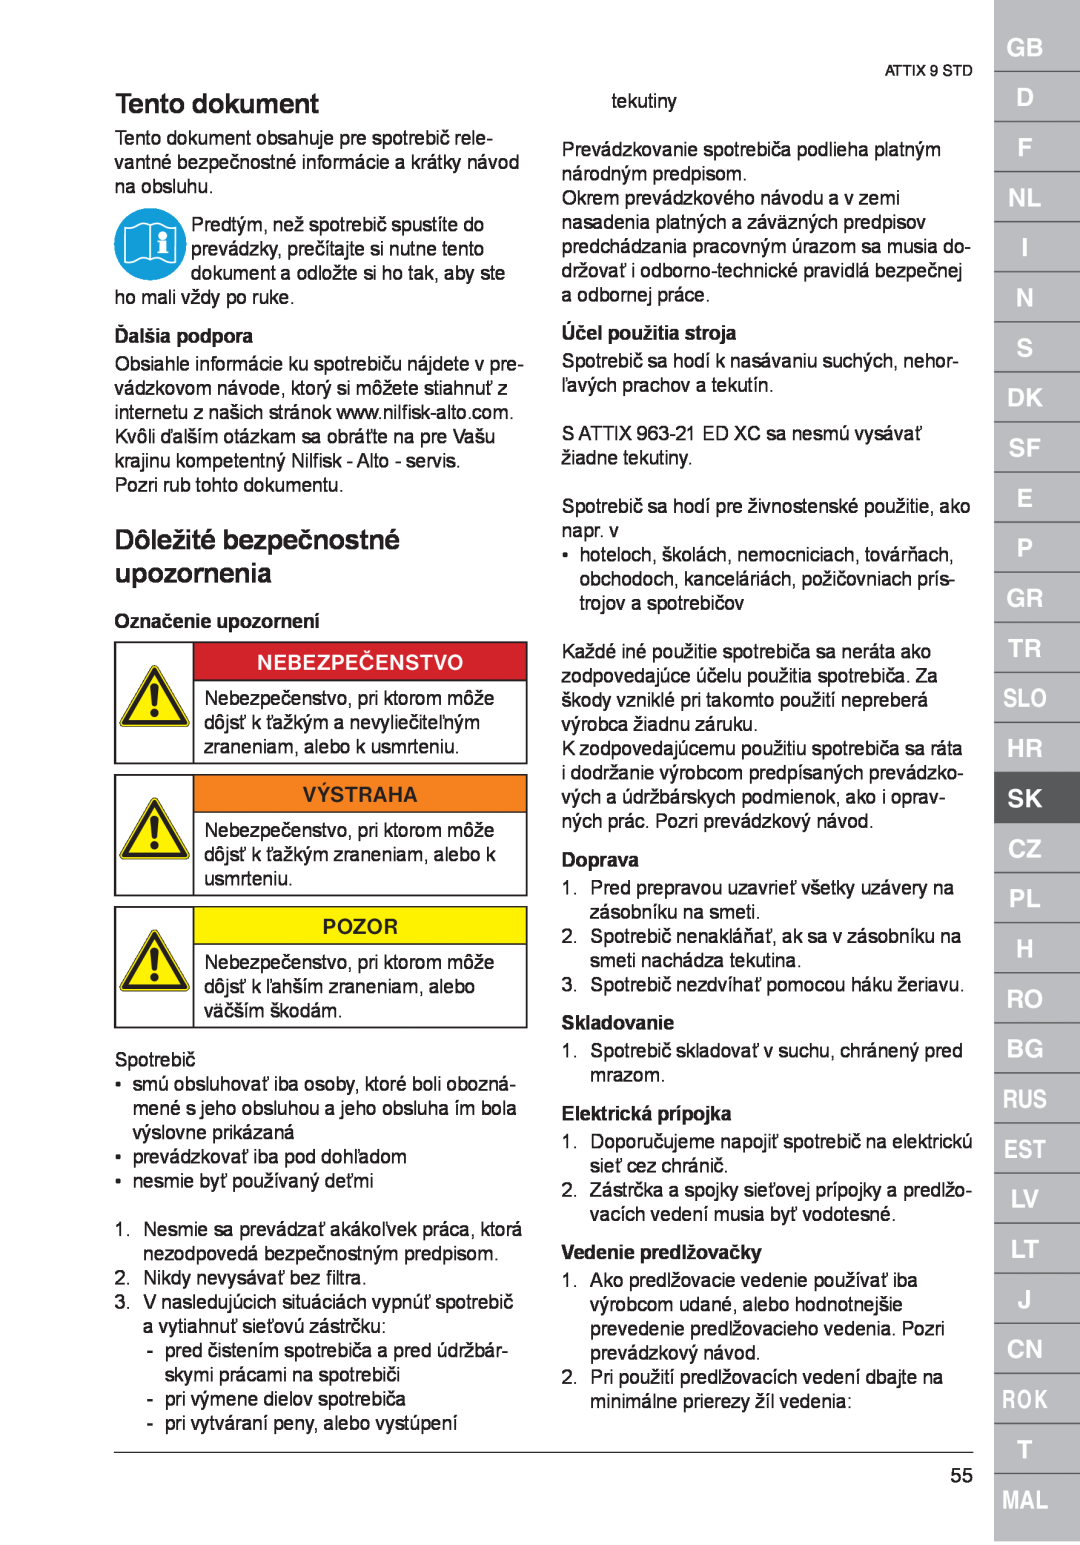 Nilfisk-ALTO ATTIX 961-01 Tento dokument, Dôležité bezpečnostné upozornenia, Nebezpečenstvo, Výstraha, Ďalšia podpora 